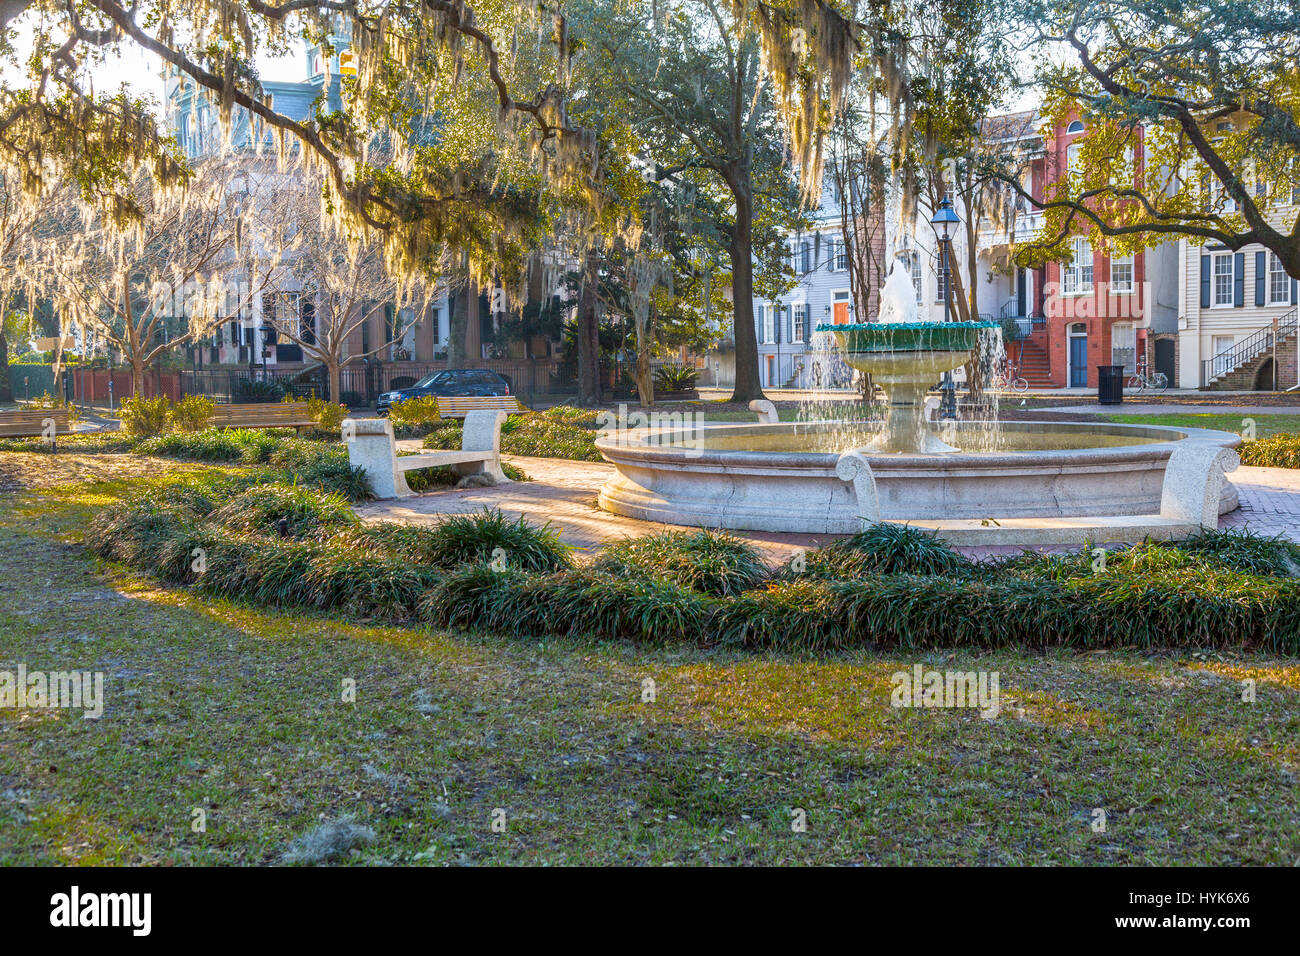 Savannah, Géorgie. Fontaine du mémorial allemand, Orleans Square. Tillandsia usneoides Moss (espagnol) dans les arbres. Banque D'Images